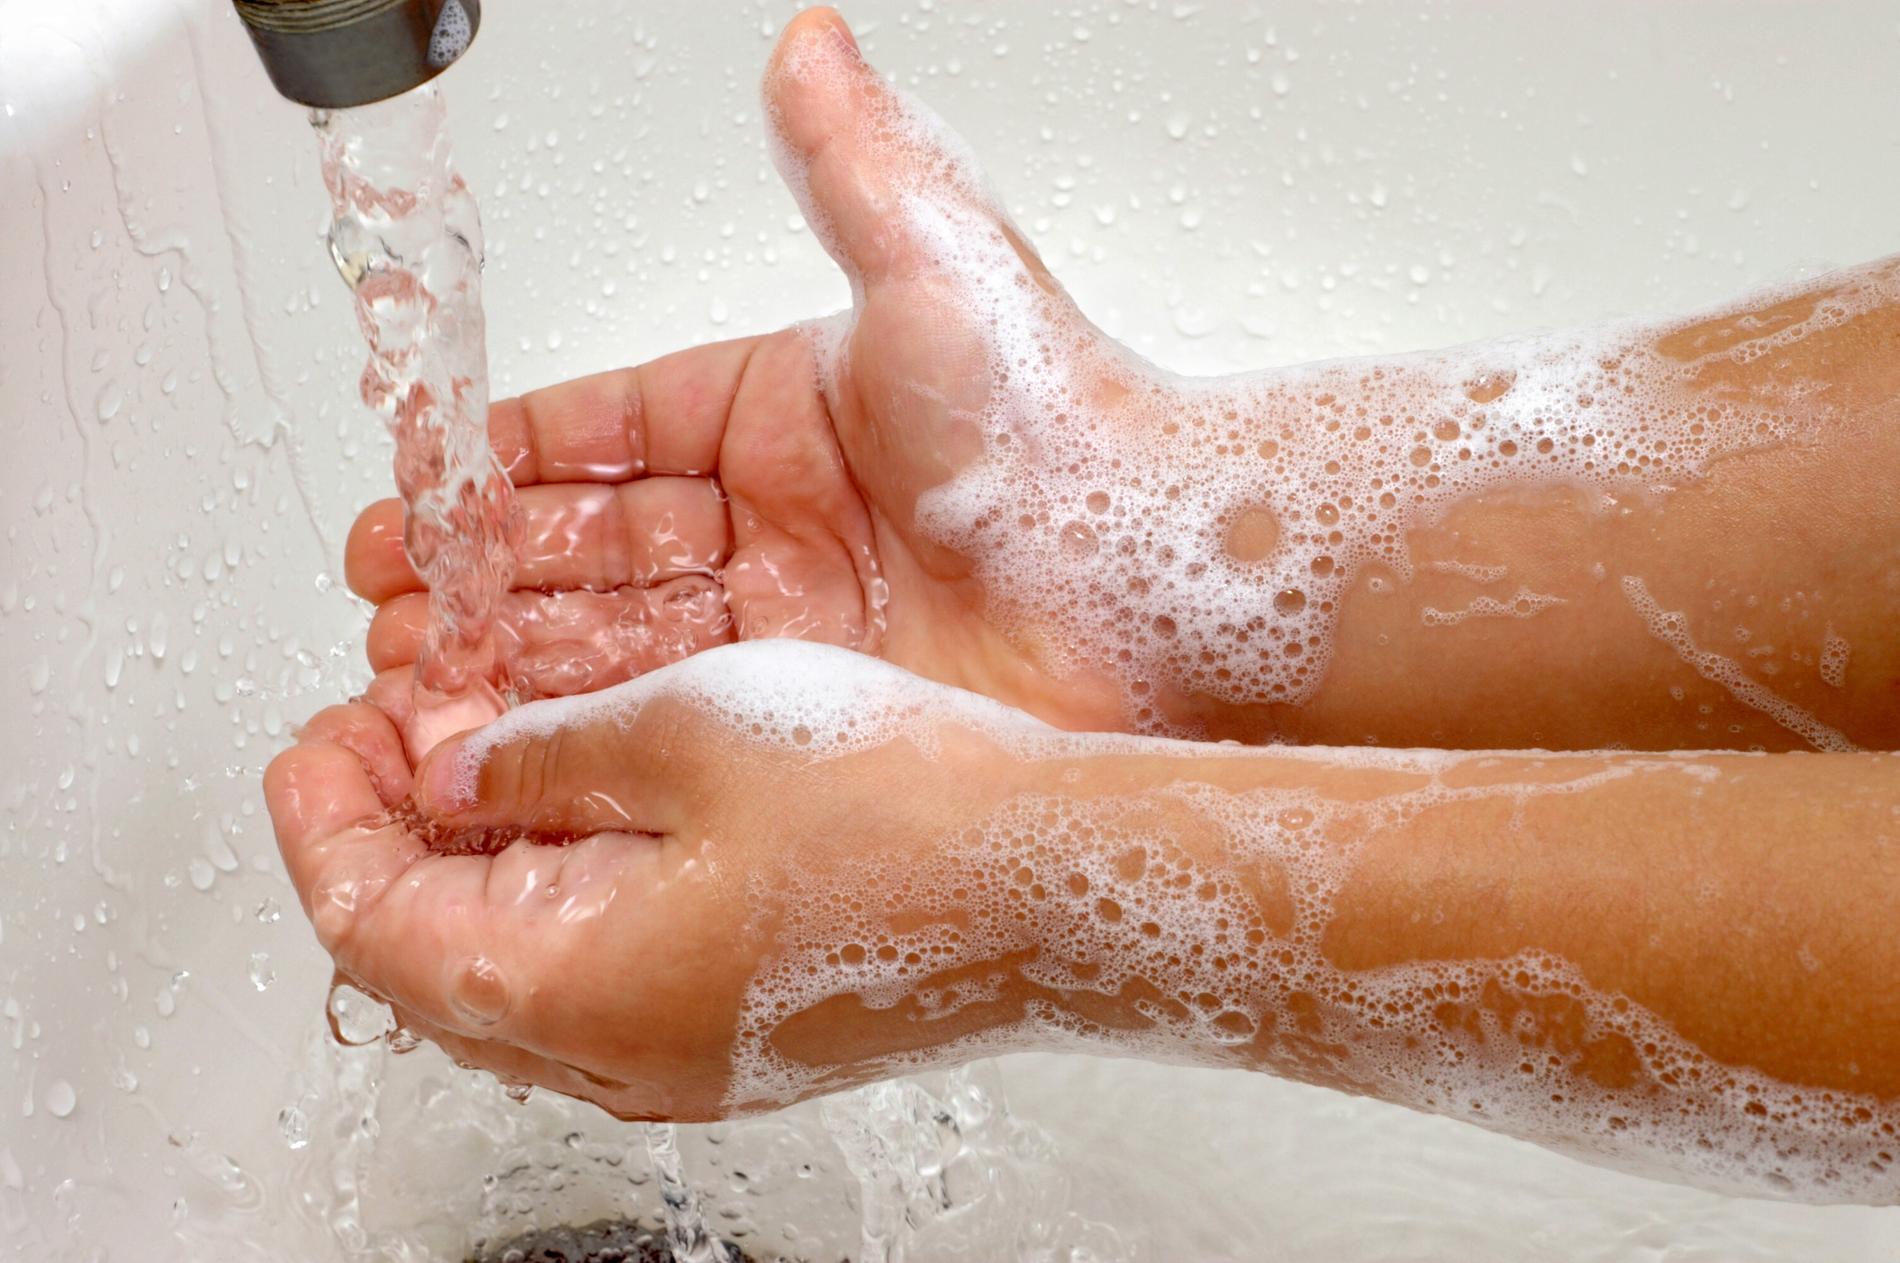 Ett av läkarens tips är att lära barnet hur en ordentlig handtvätt går till – det ger det oroliga barnet en känsla av kontroll.